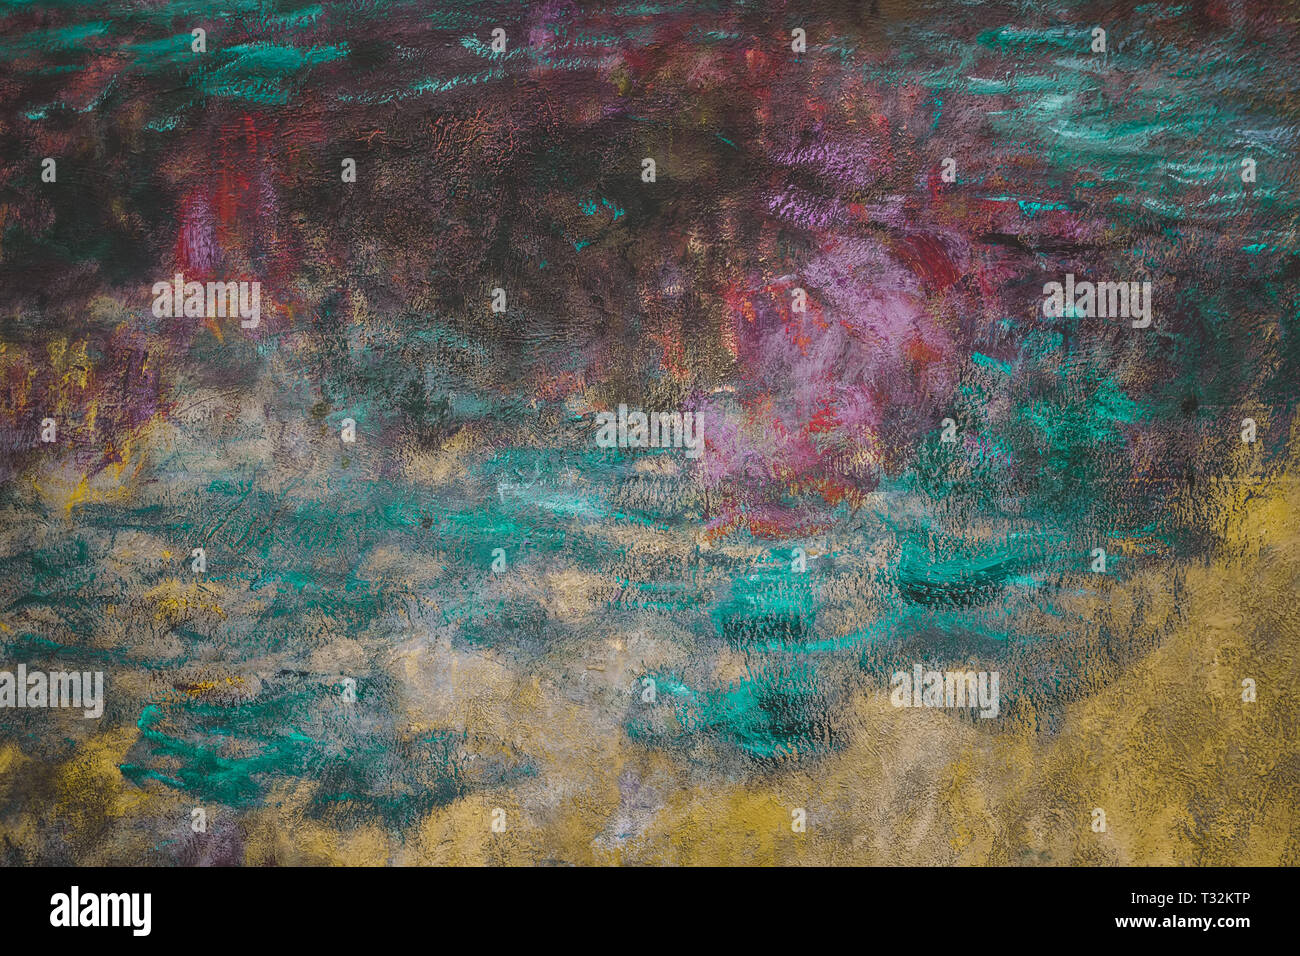 Svuotare colorate texture grunge, abstract background. I mezzitoni scuro e colori moody Foto Stock